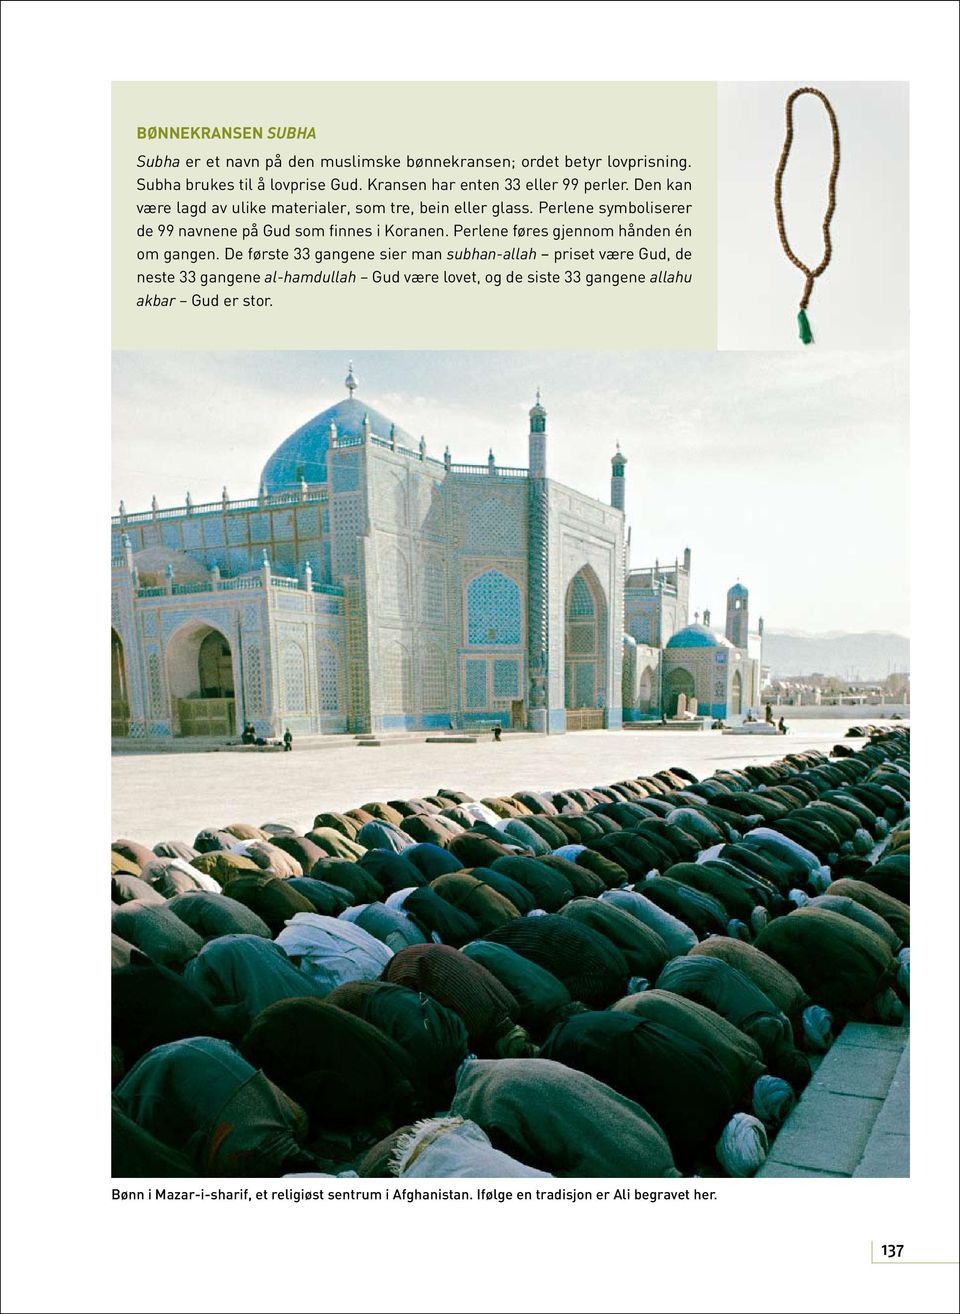 Perlene symboliserer de 99 navnene på Gud som finnes i Koranen. Perlene føres gjennom hånden én om gangen.